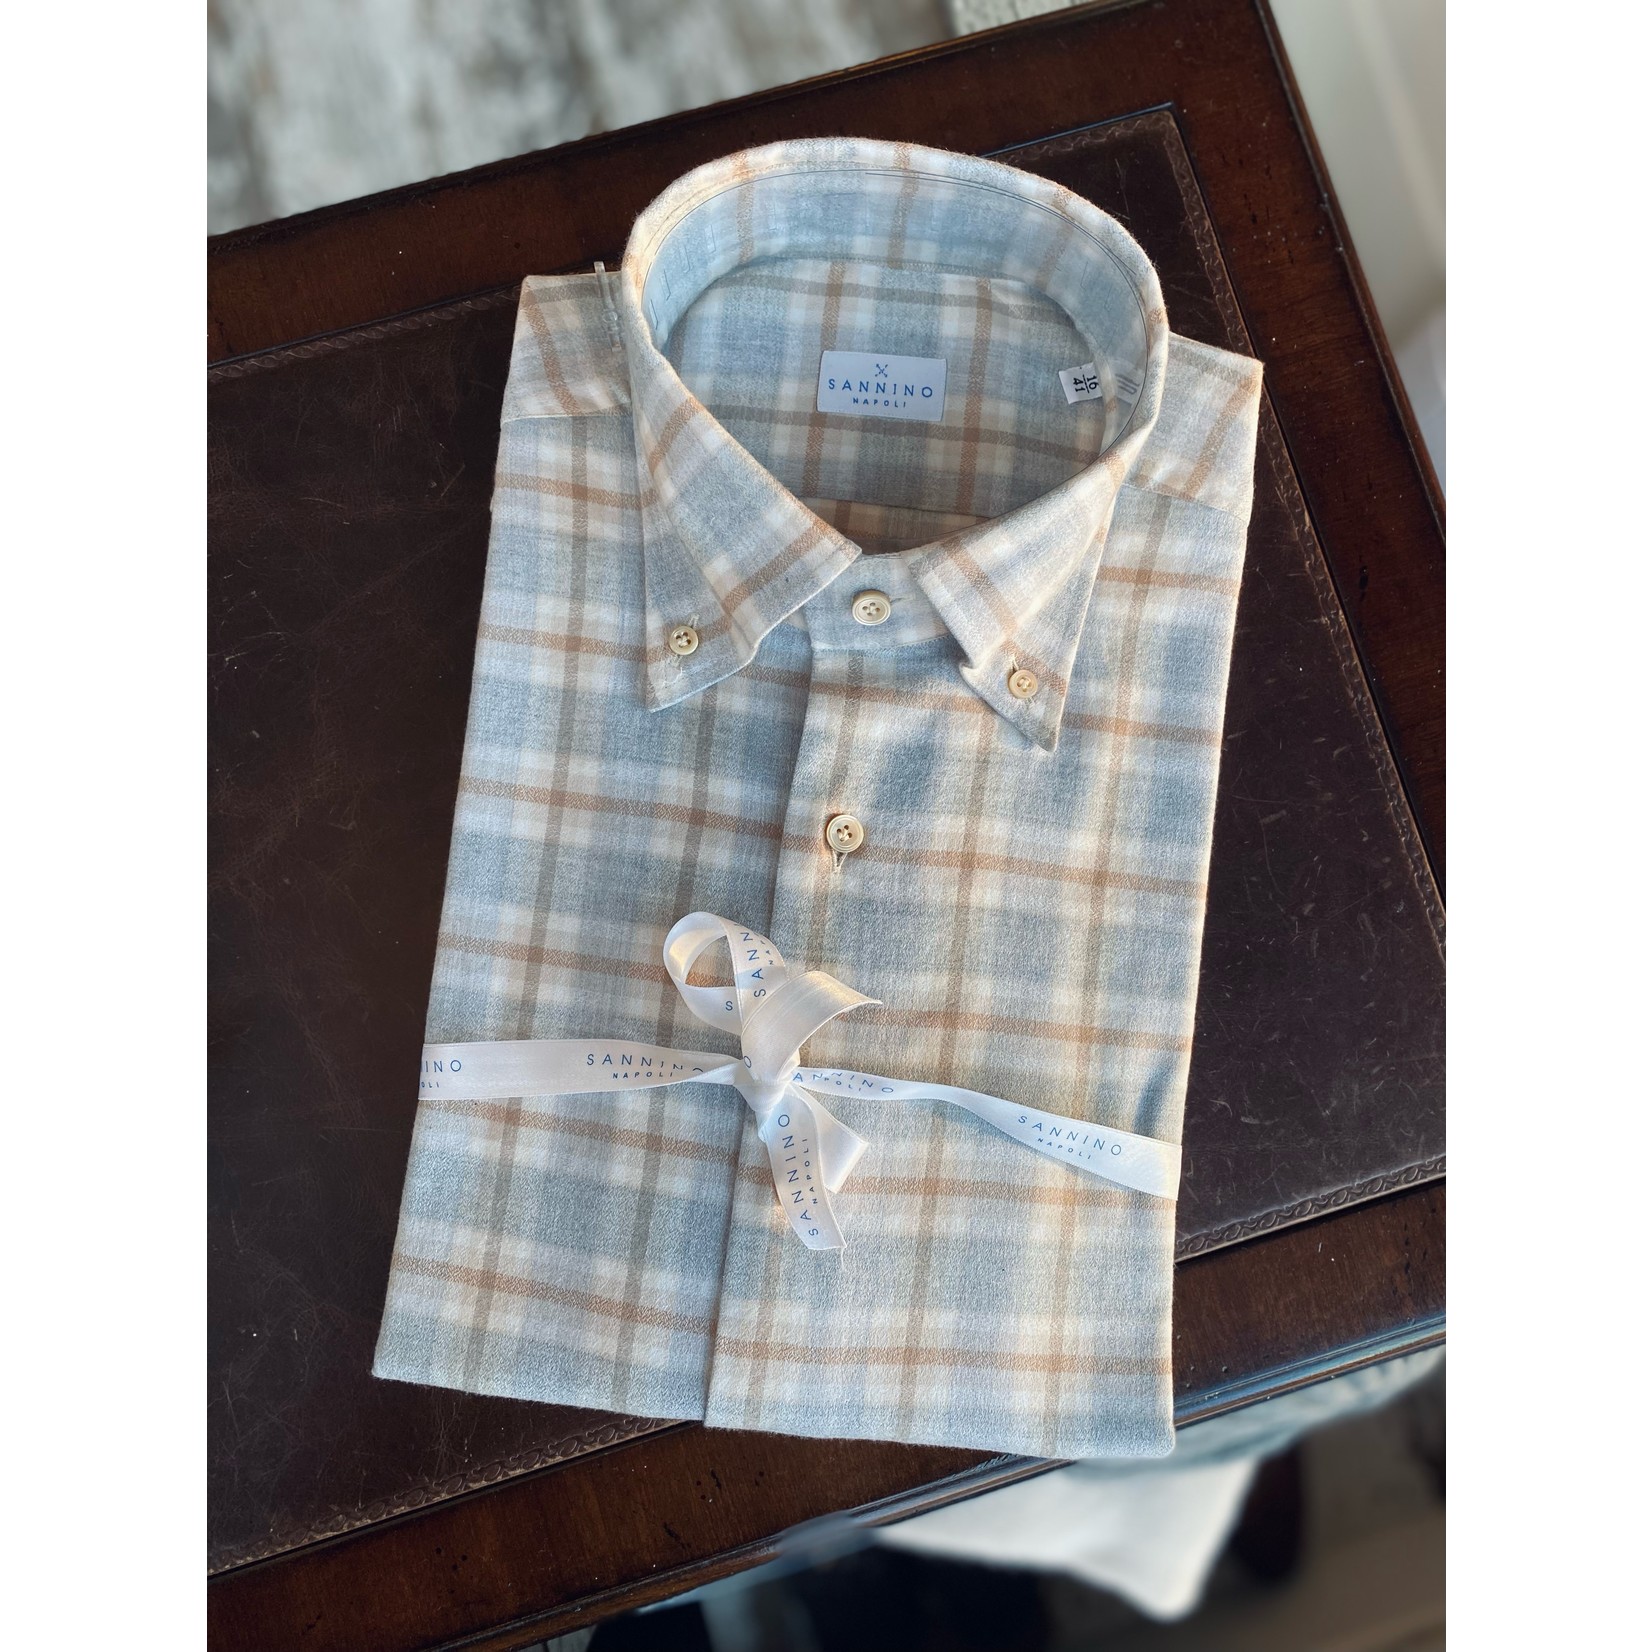 Sannino chemise à col boutonné à carreaux